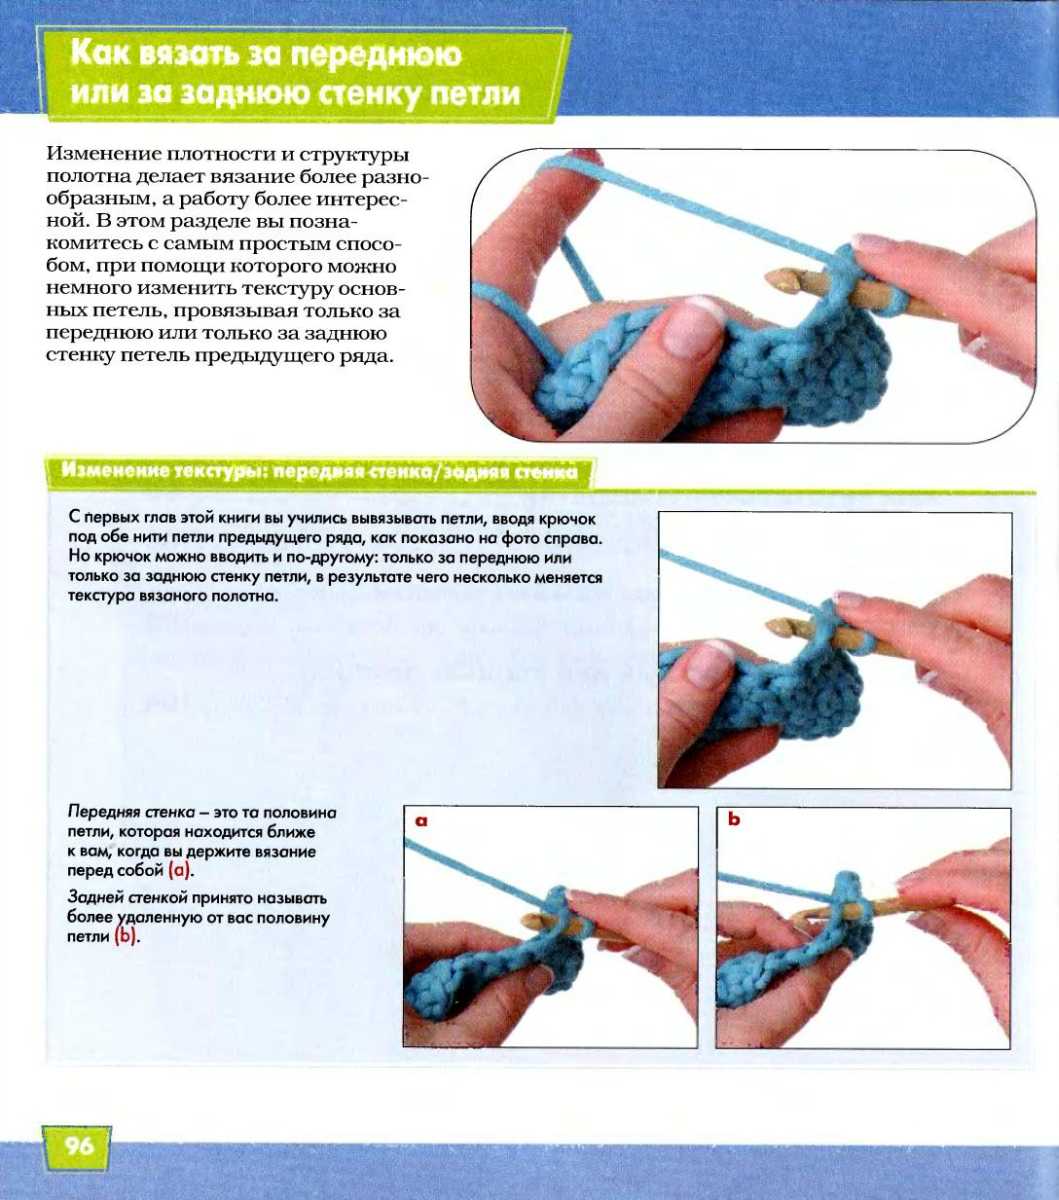 Вязание крючком, модели, схемы и описания вязания крючком.